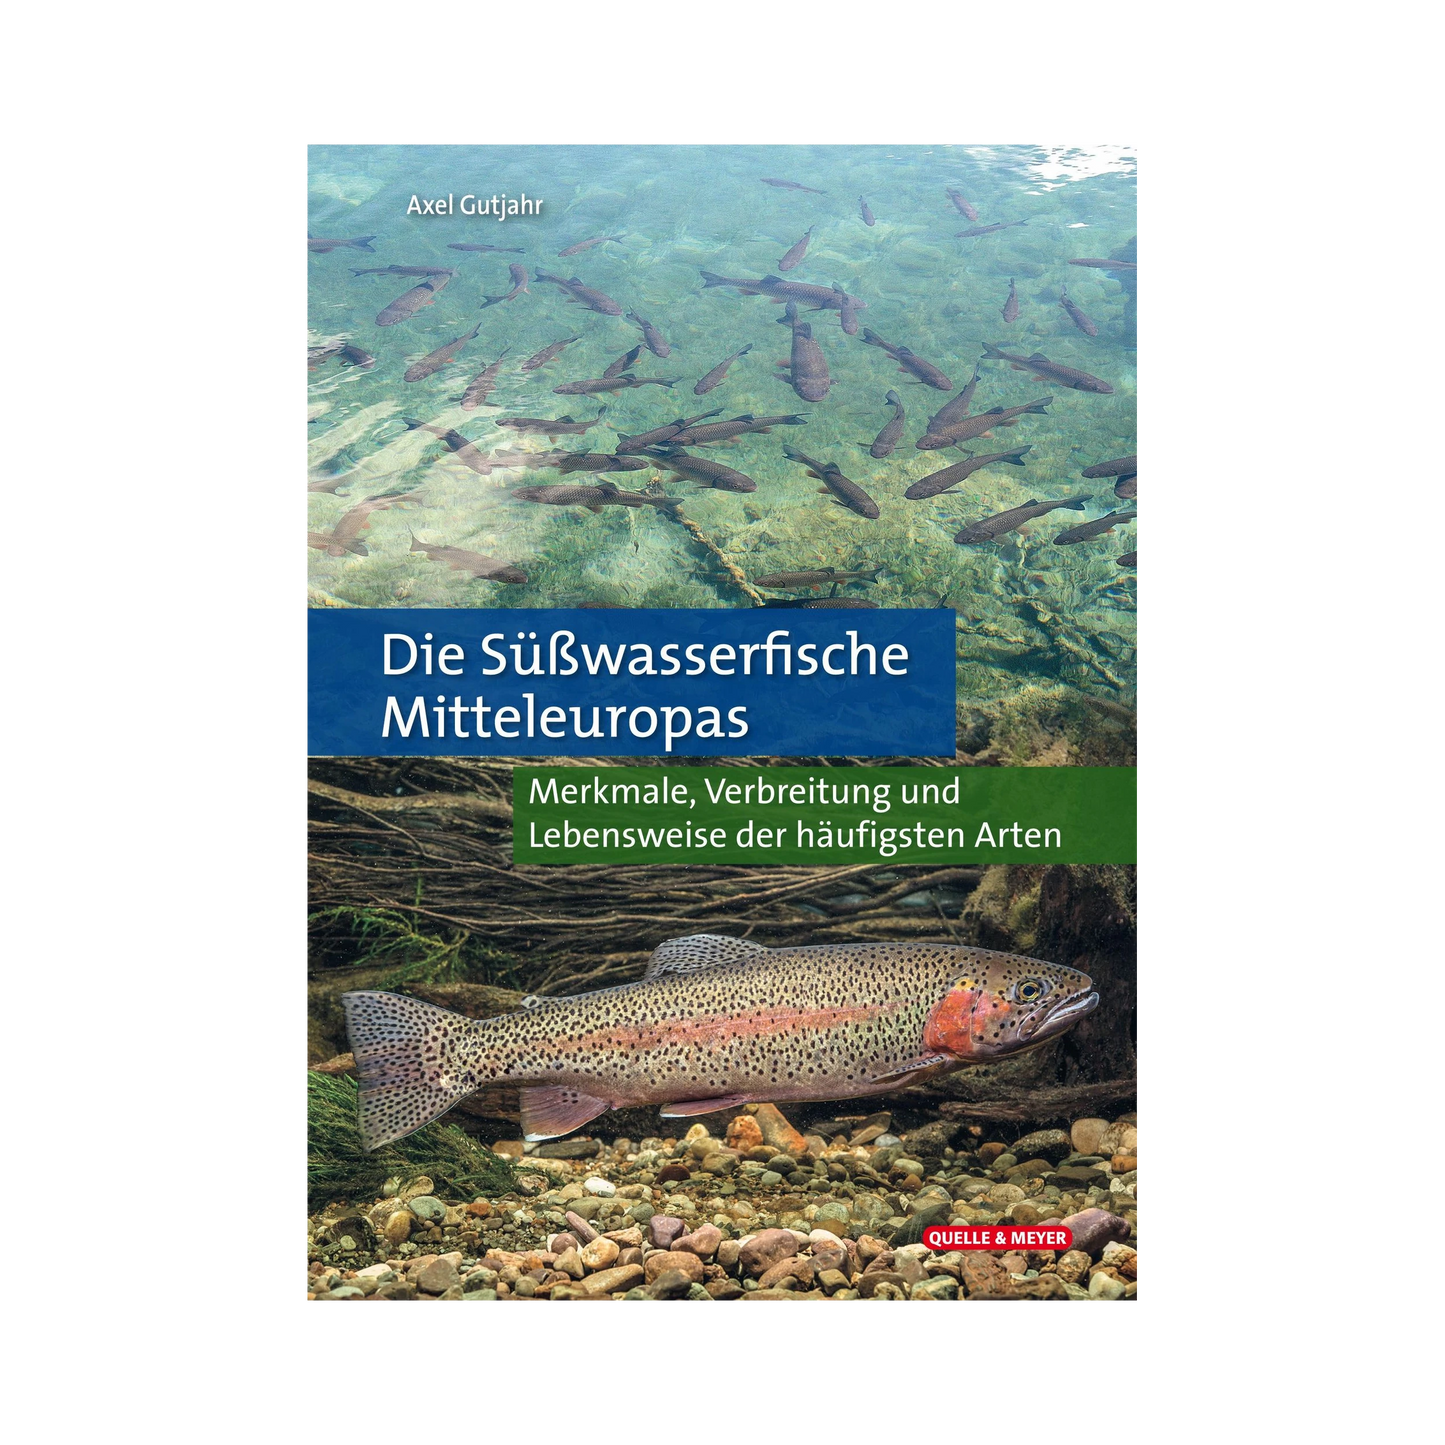 QUELLE UND MEYER Die Süßwasserfische Mitteleuropas (Axel Gutjahr)